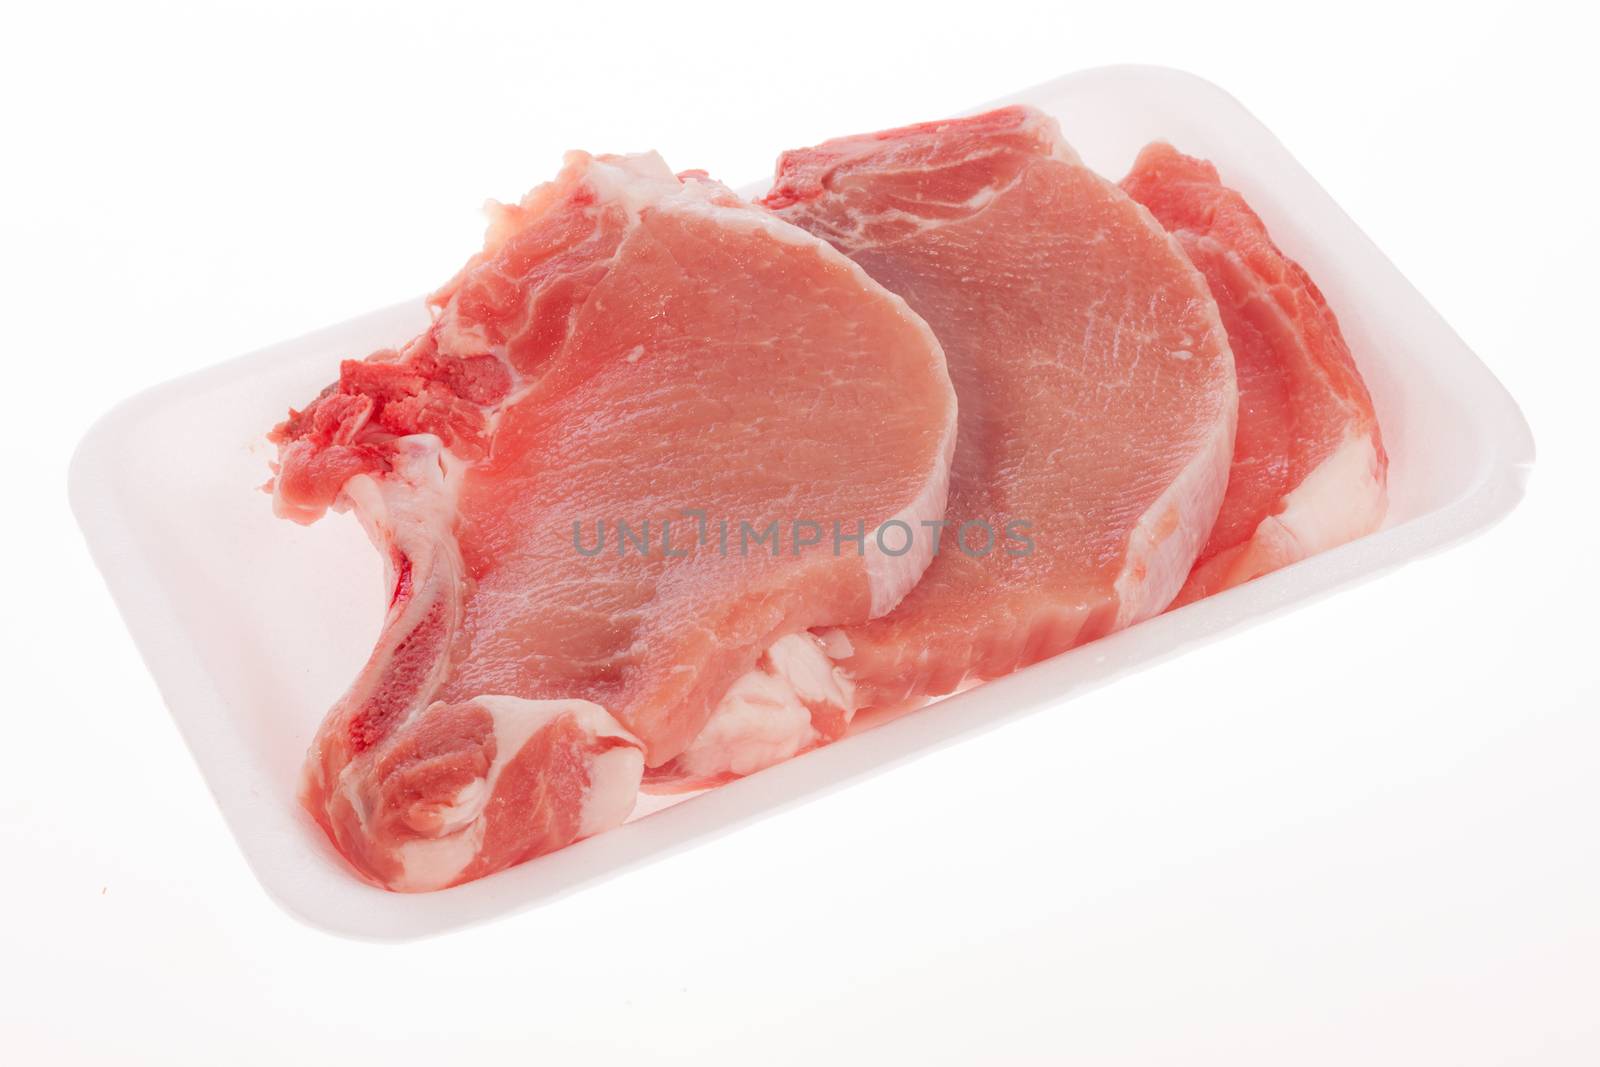 Raw pork chop by aguirre_mar